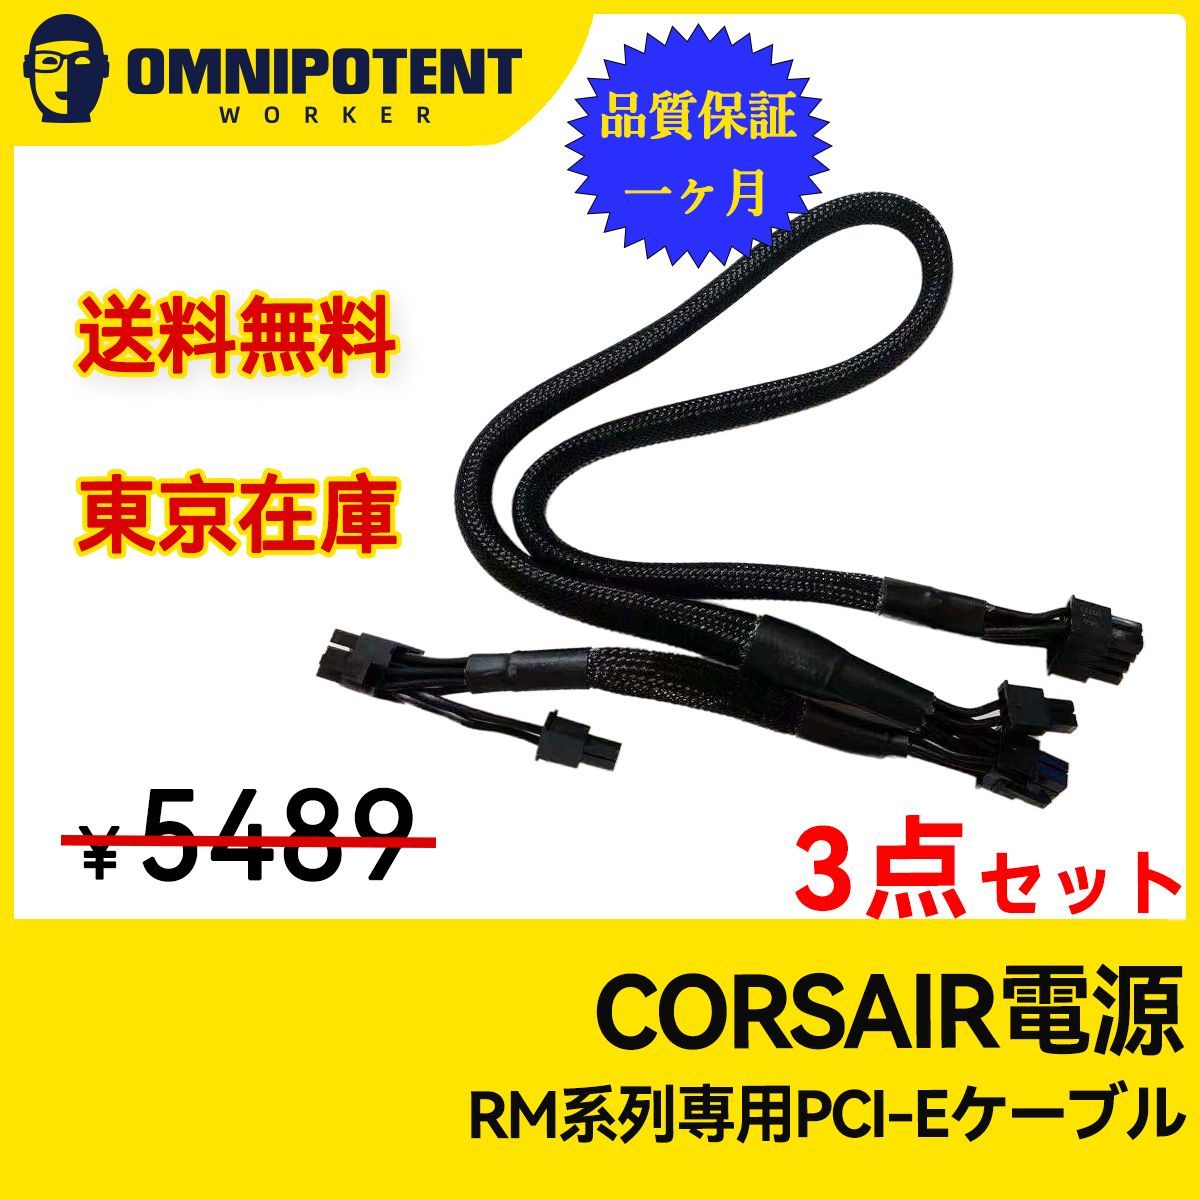 Corsair PCIeケーブル(純正品)